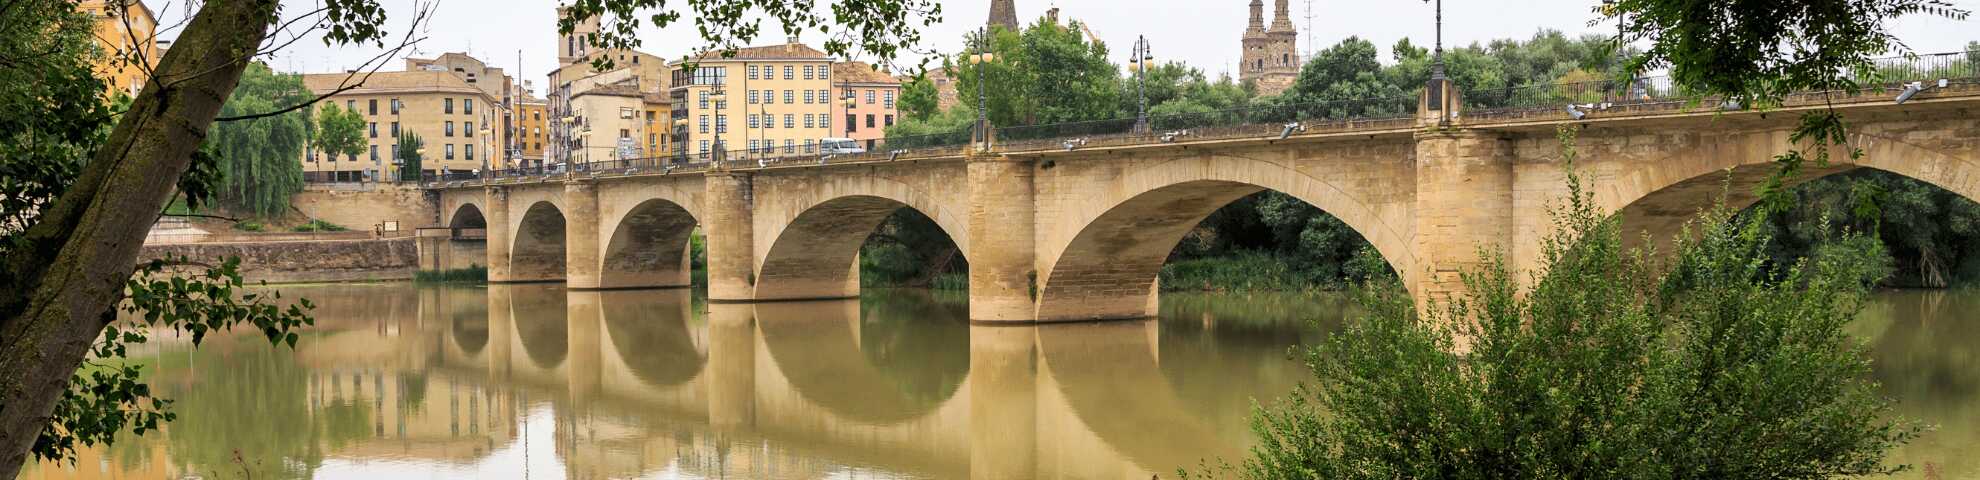 Puente de piedra de Logroño